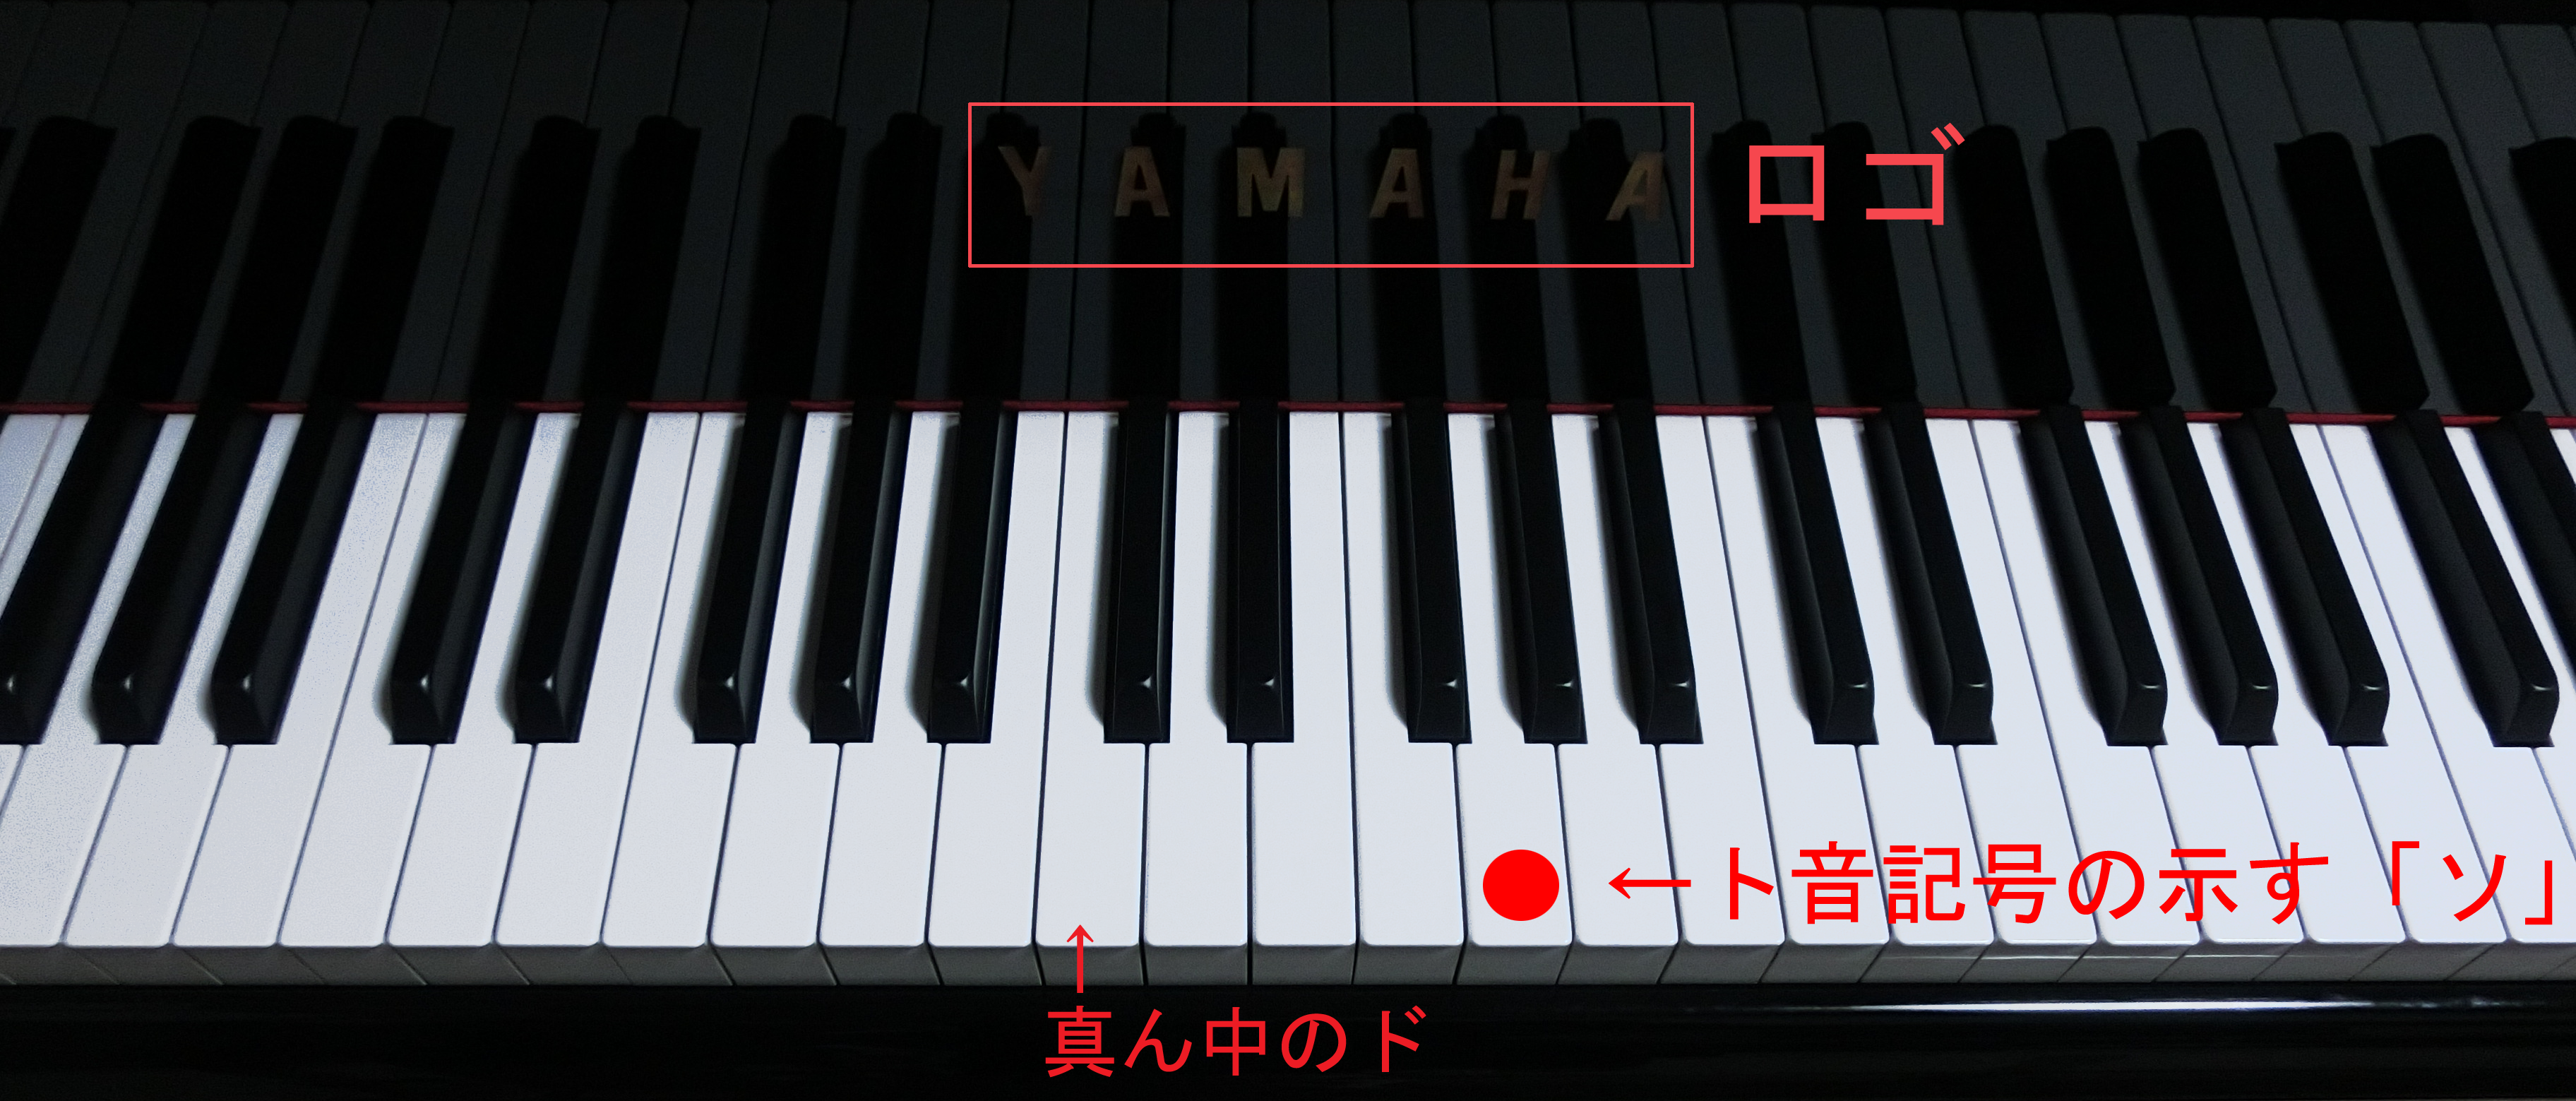 ピアノの真ん中のドの音と、ト音記号が示すソの音